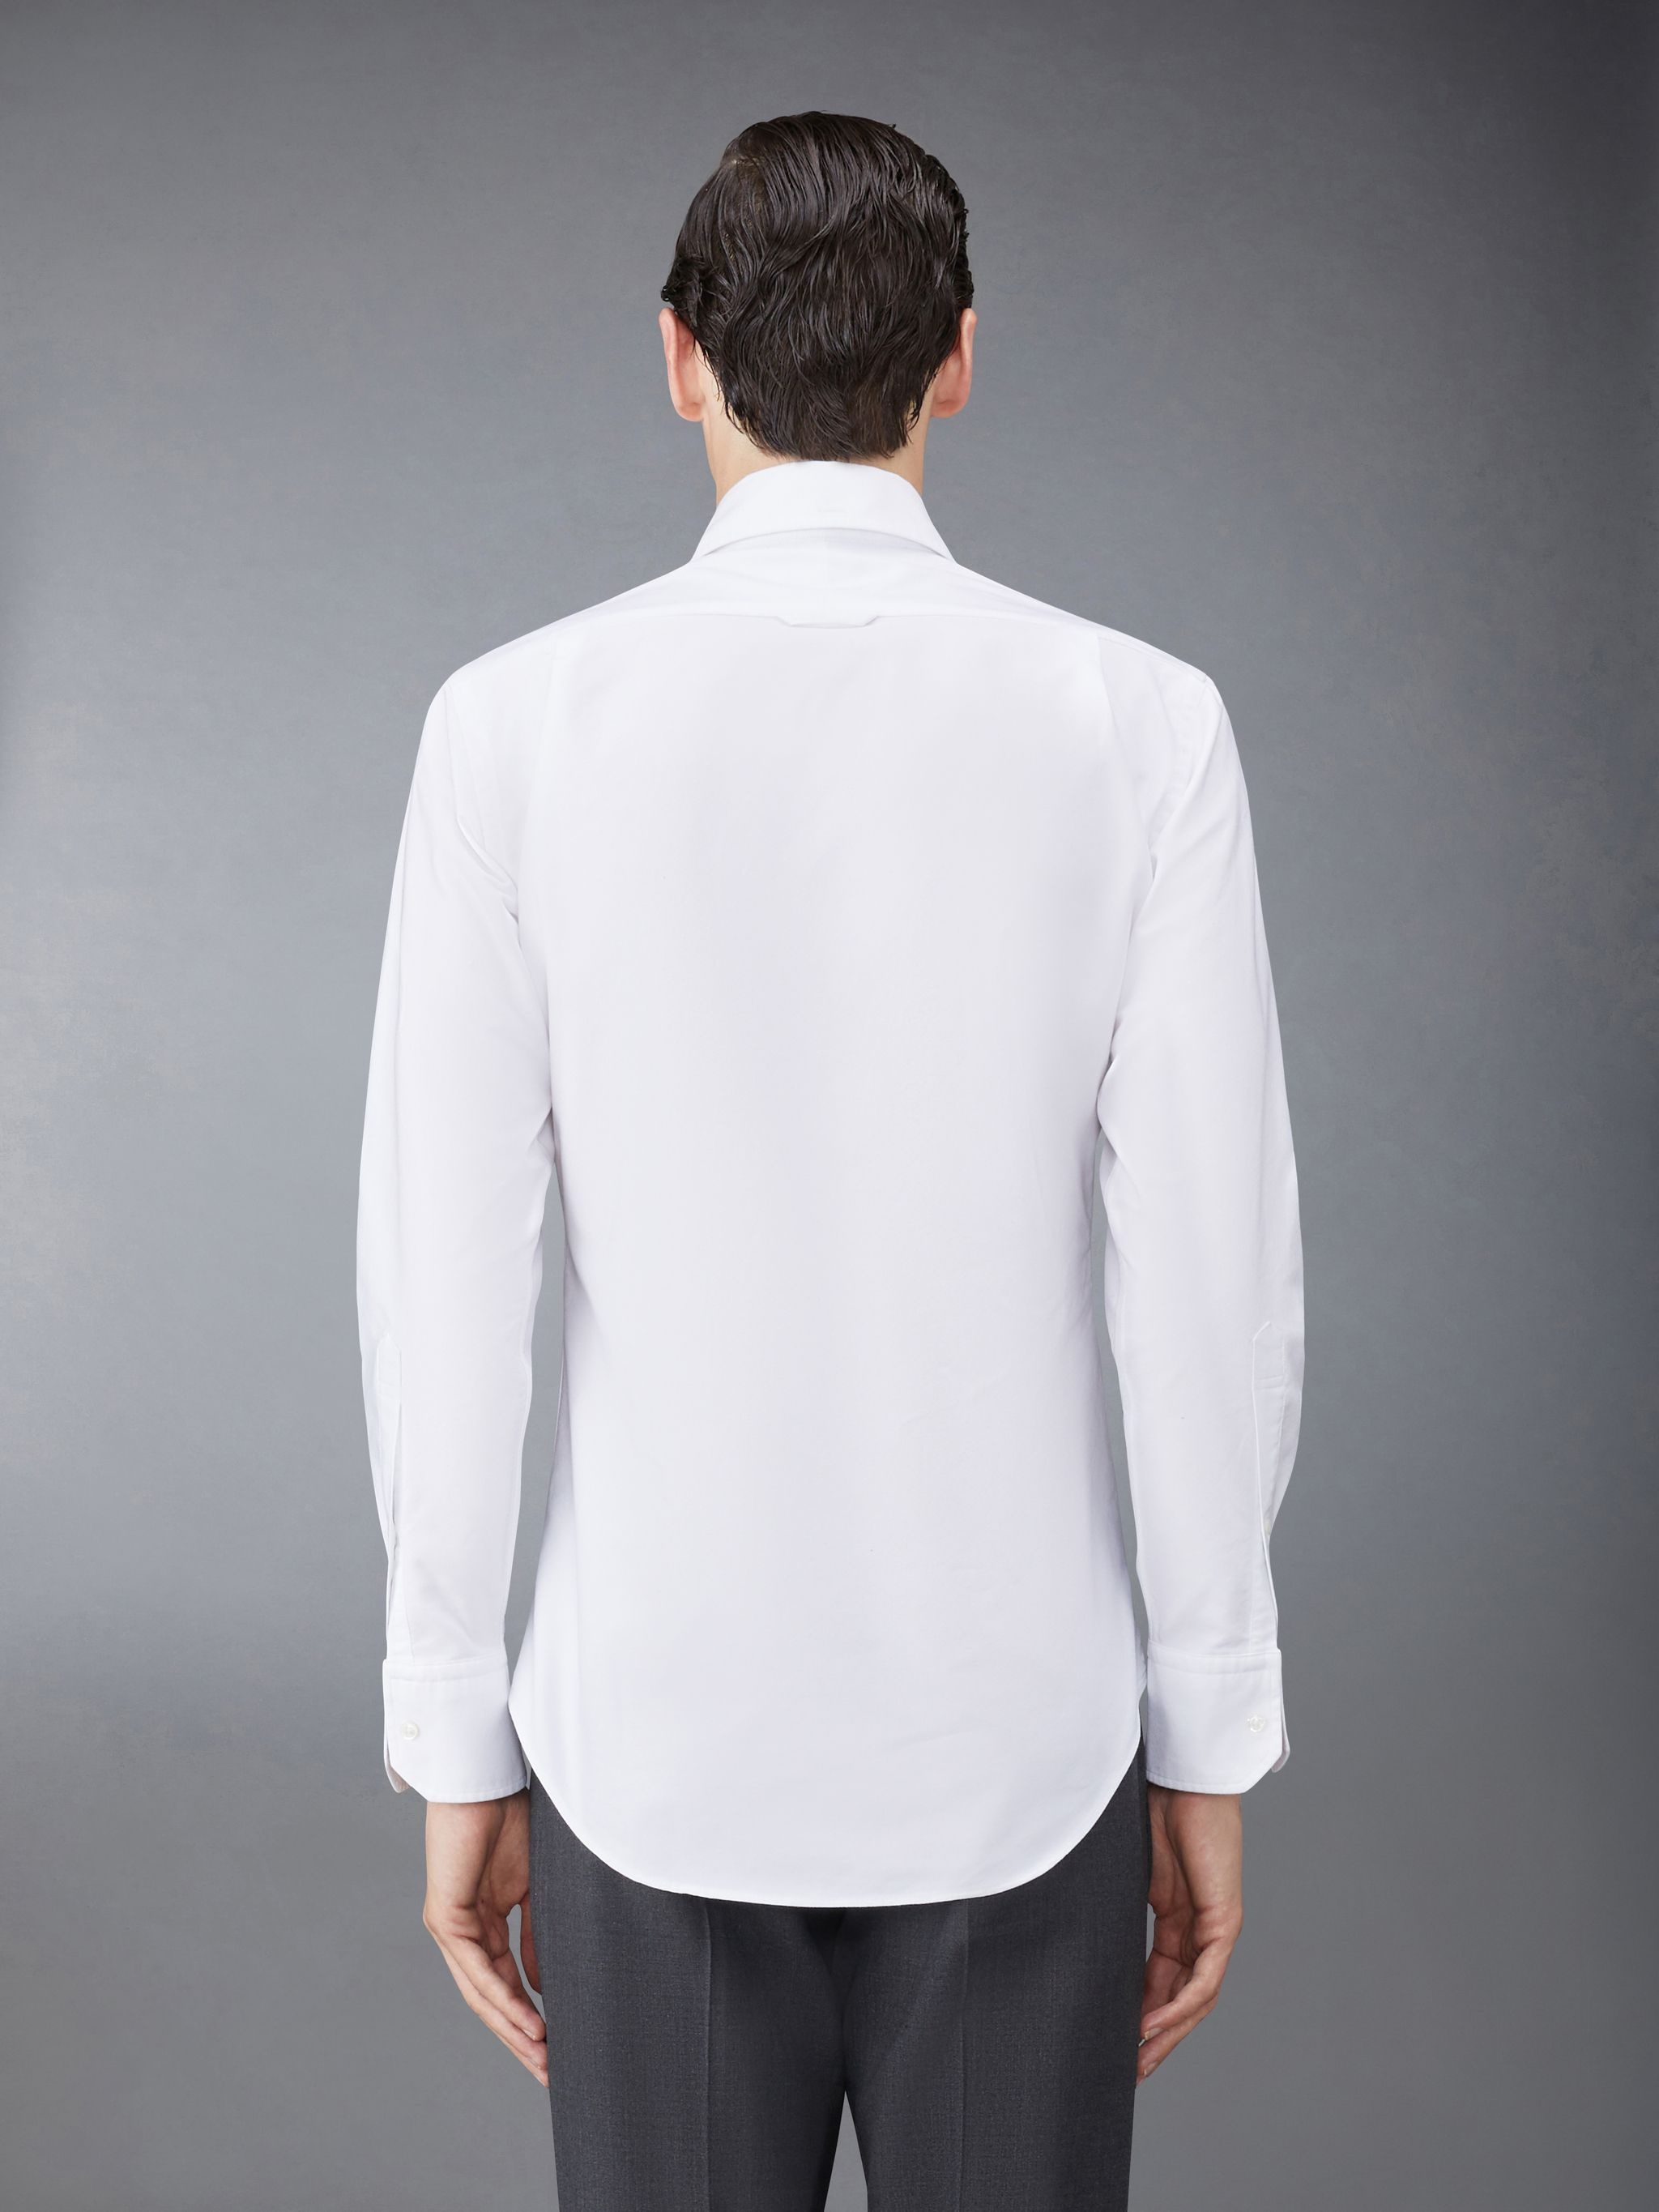 button-up cotton shirt - 3